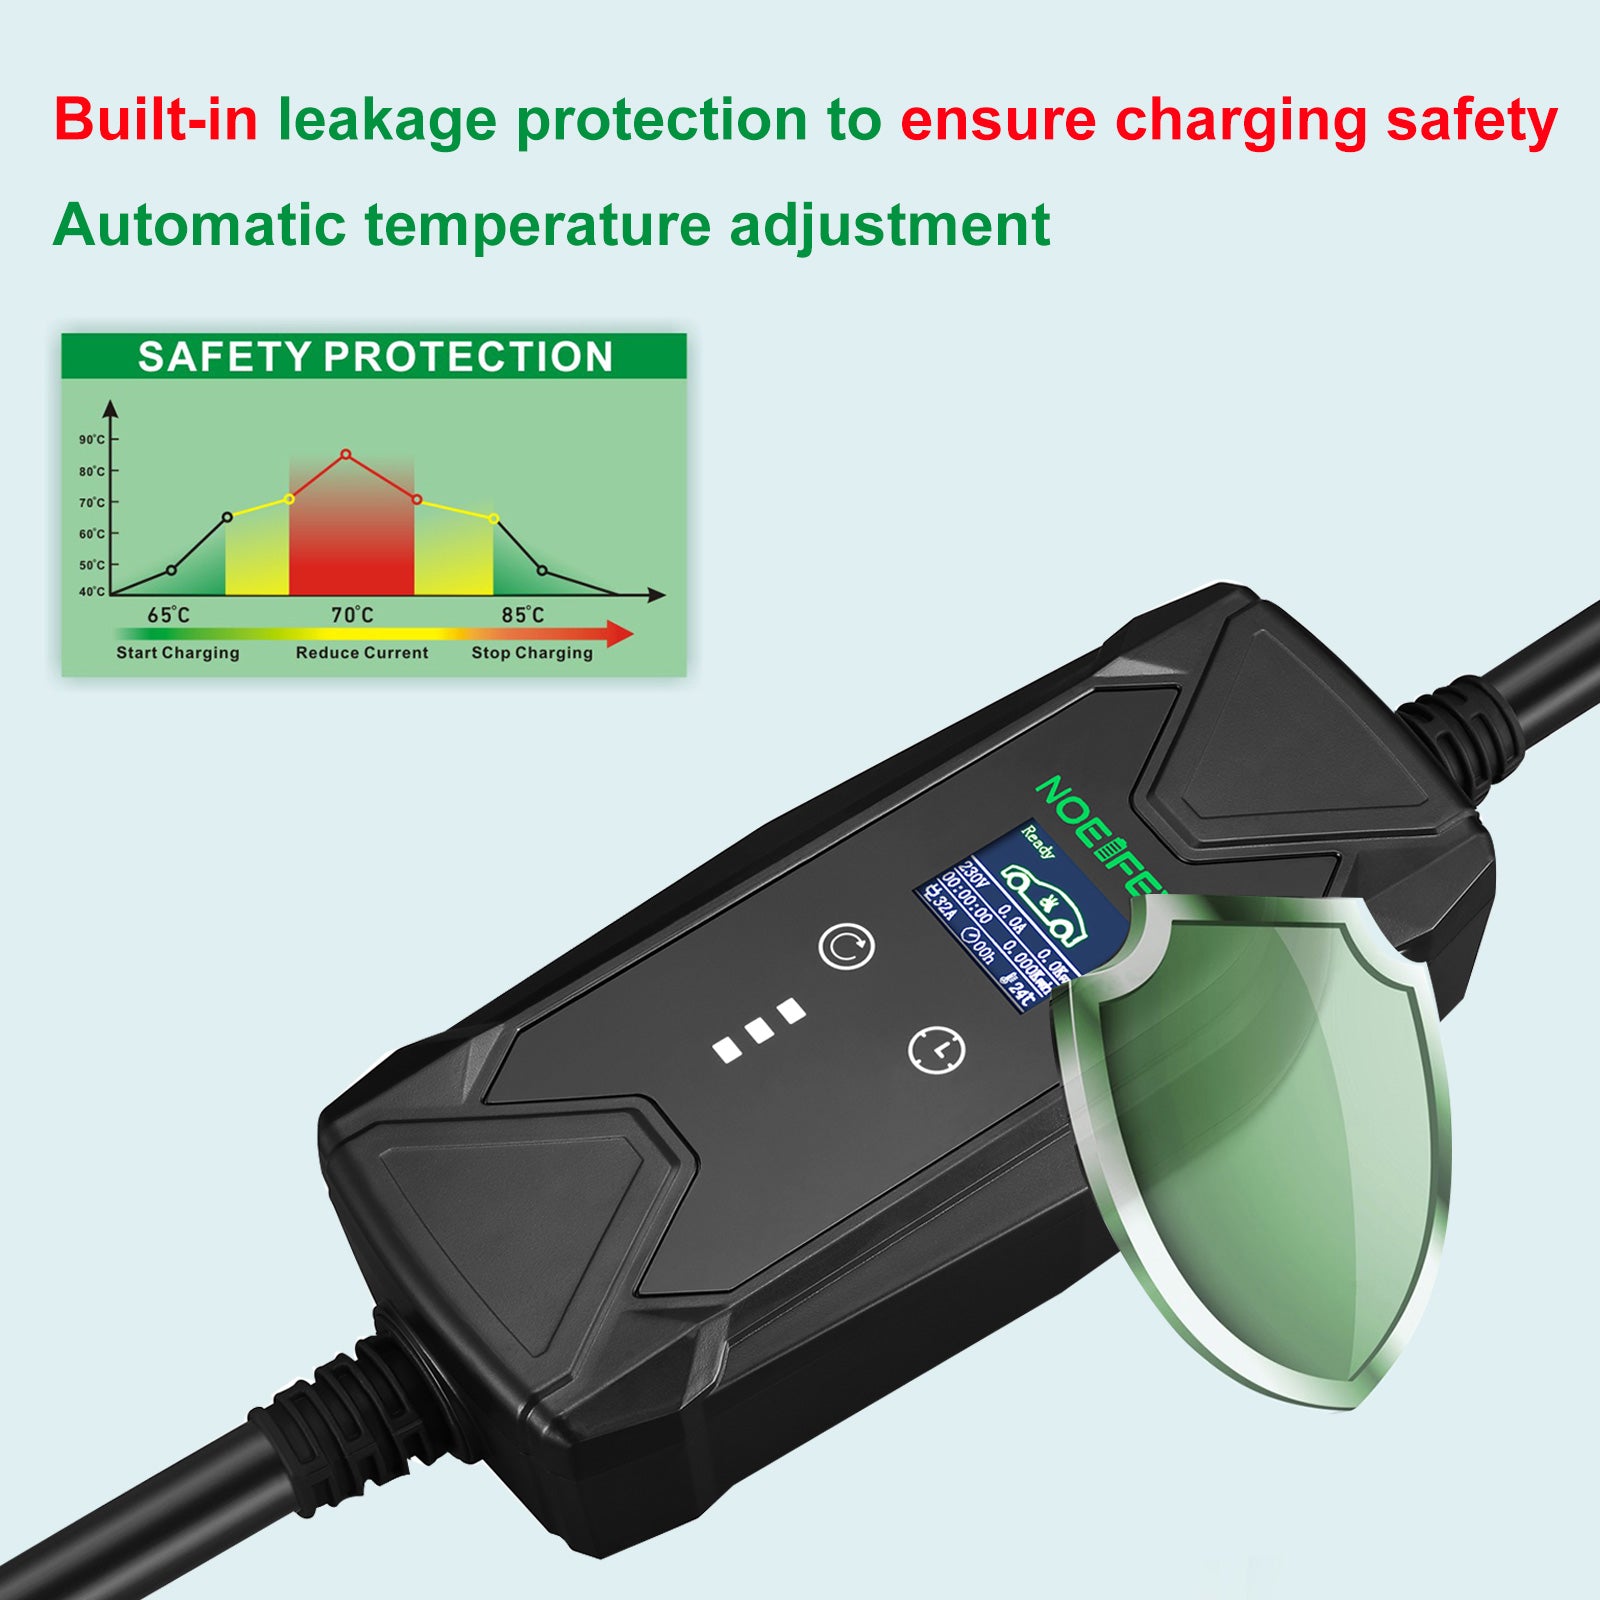 Chargeur portable pour véhicule électrique (22kW – Type 2